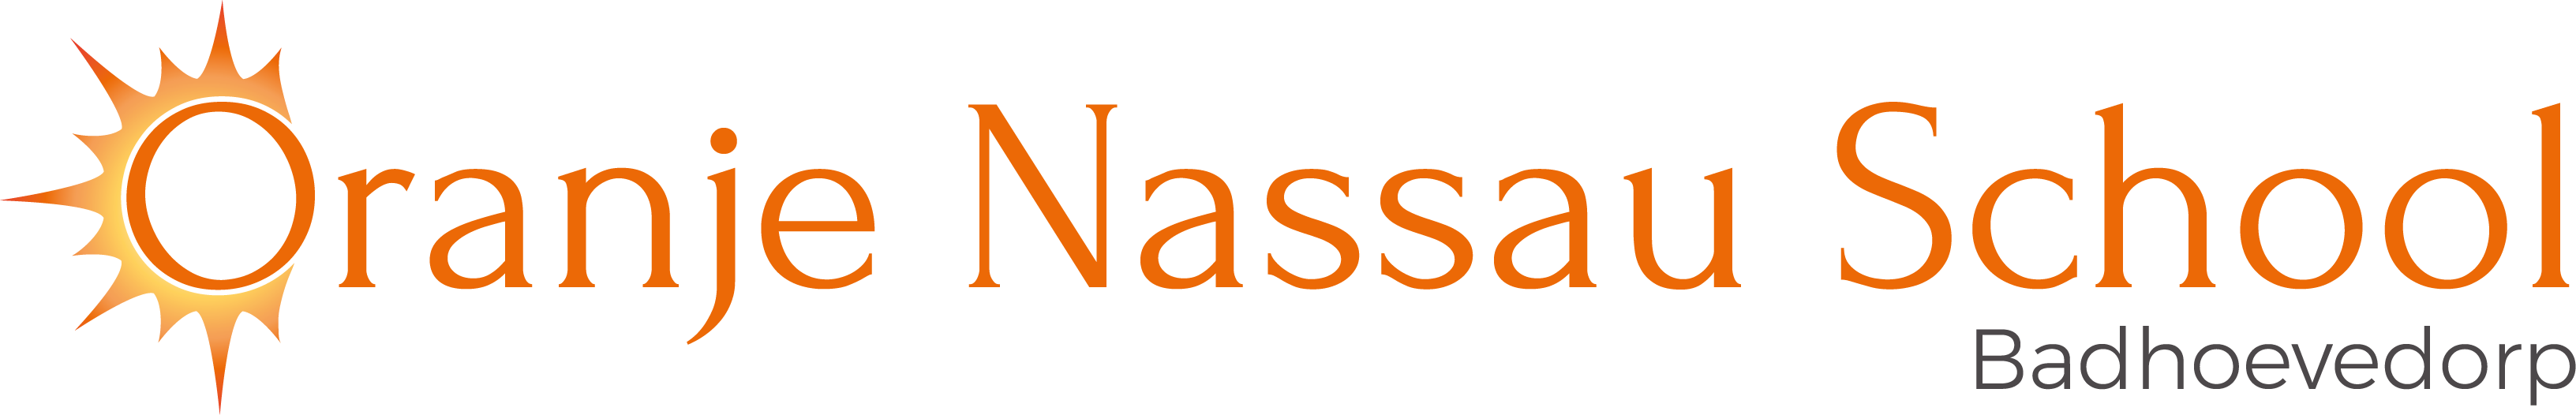 Oranje Nassau School